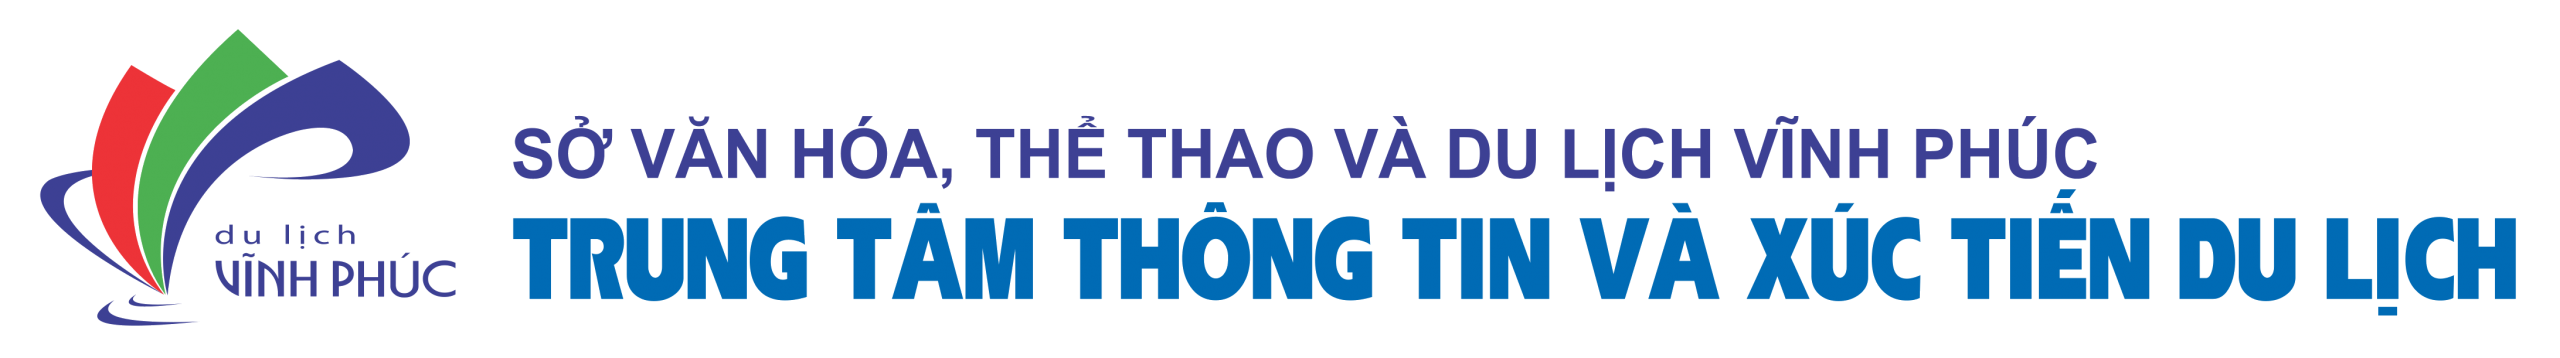 Vinh Phuc Tourism - VINH PHUC TOURISM INFORMATION AND PROMOTION CENTER